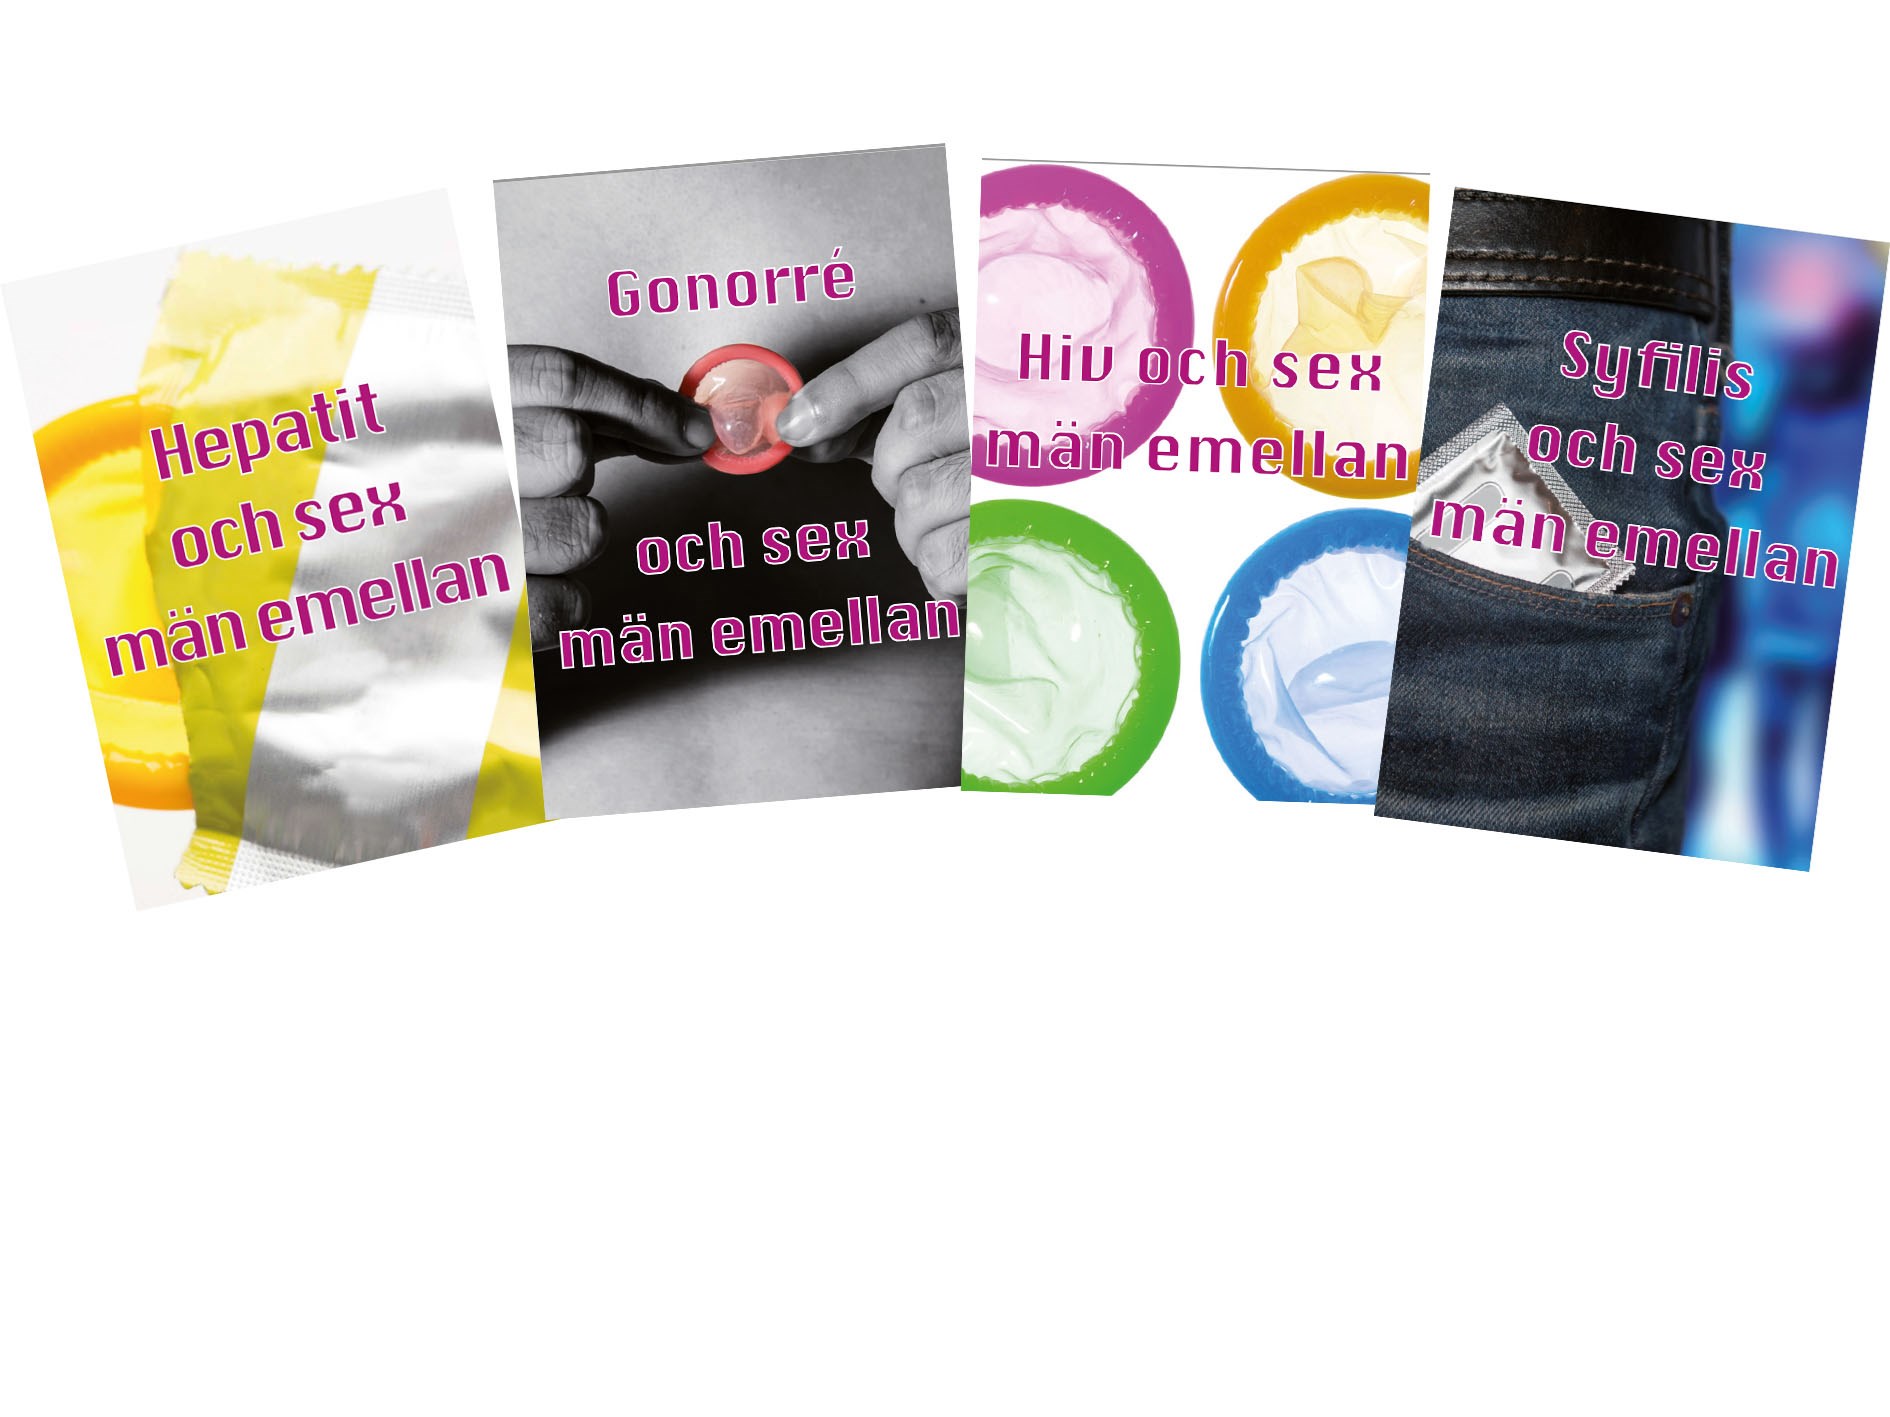 Fyra broschyrframsidor för sex män emellan med bilder på kondomförpackningar